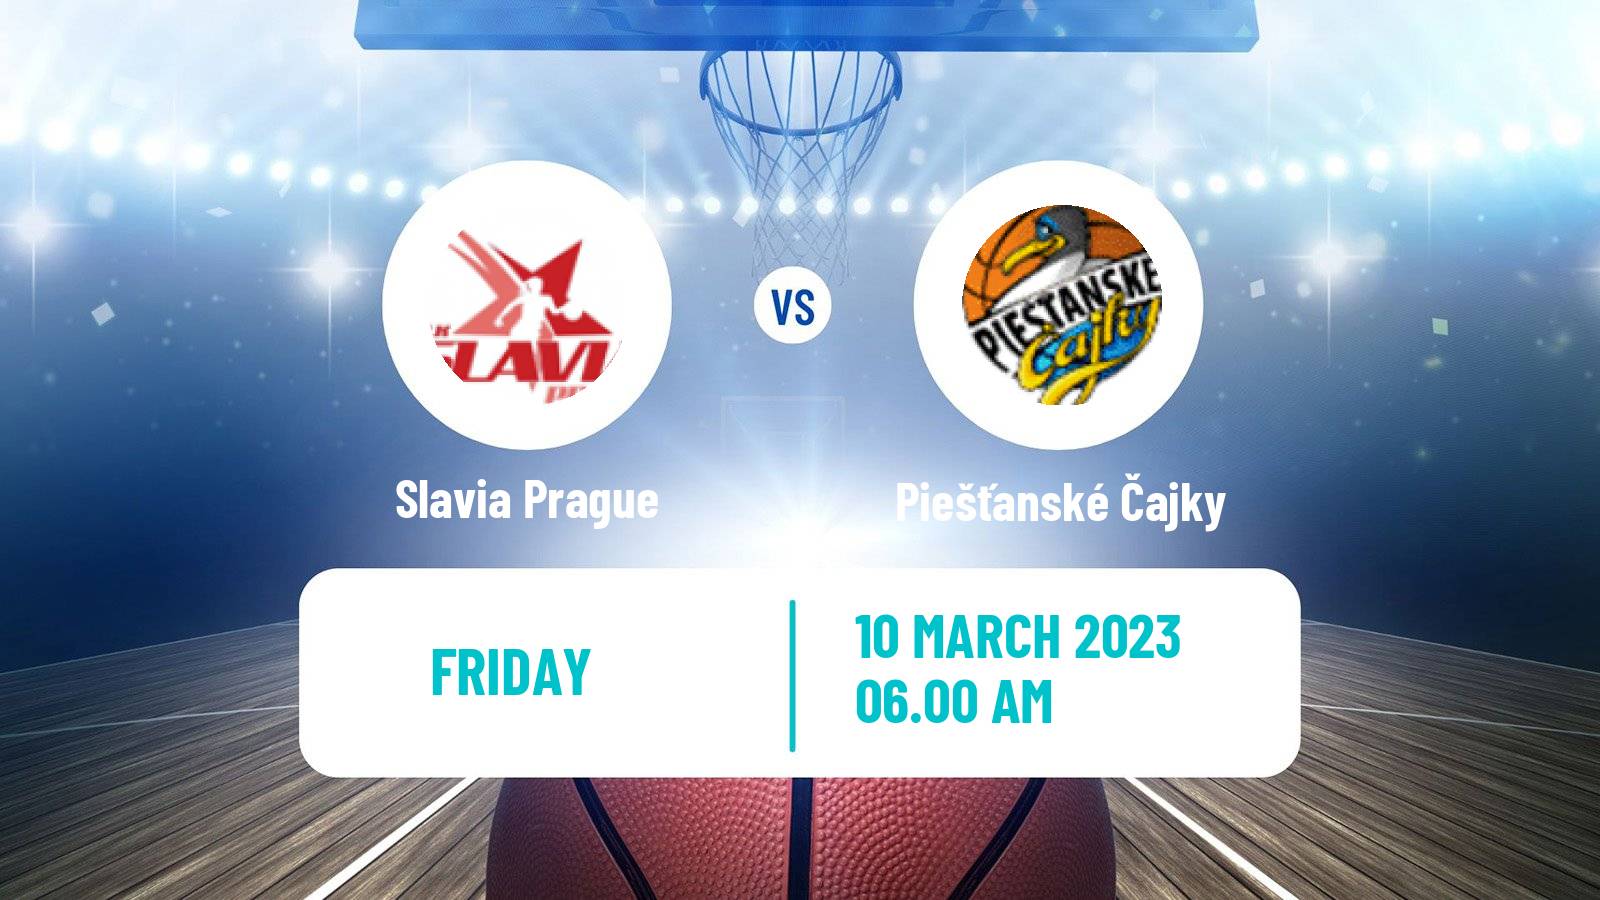 Basketball Federal Cup Basketball Women Slavia Prague - Piešťanské Čajky